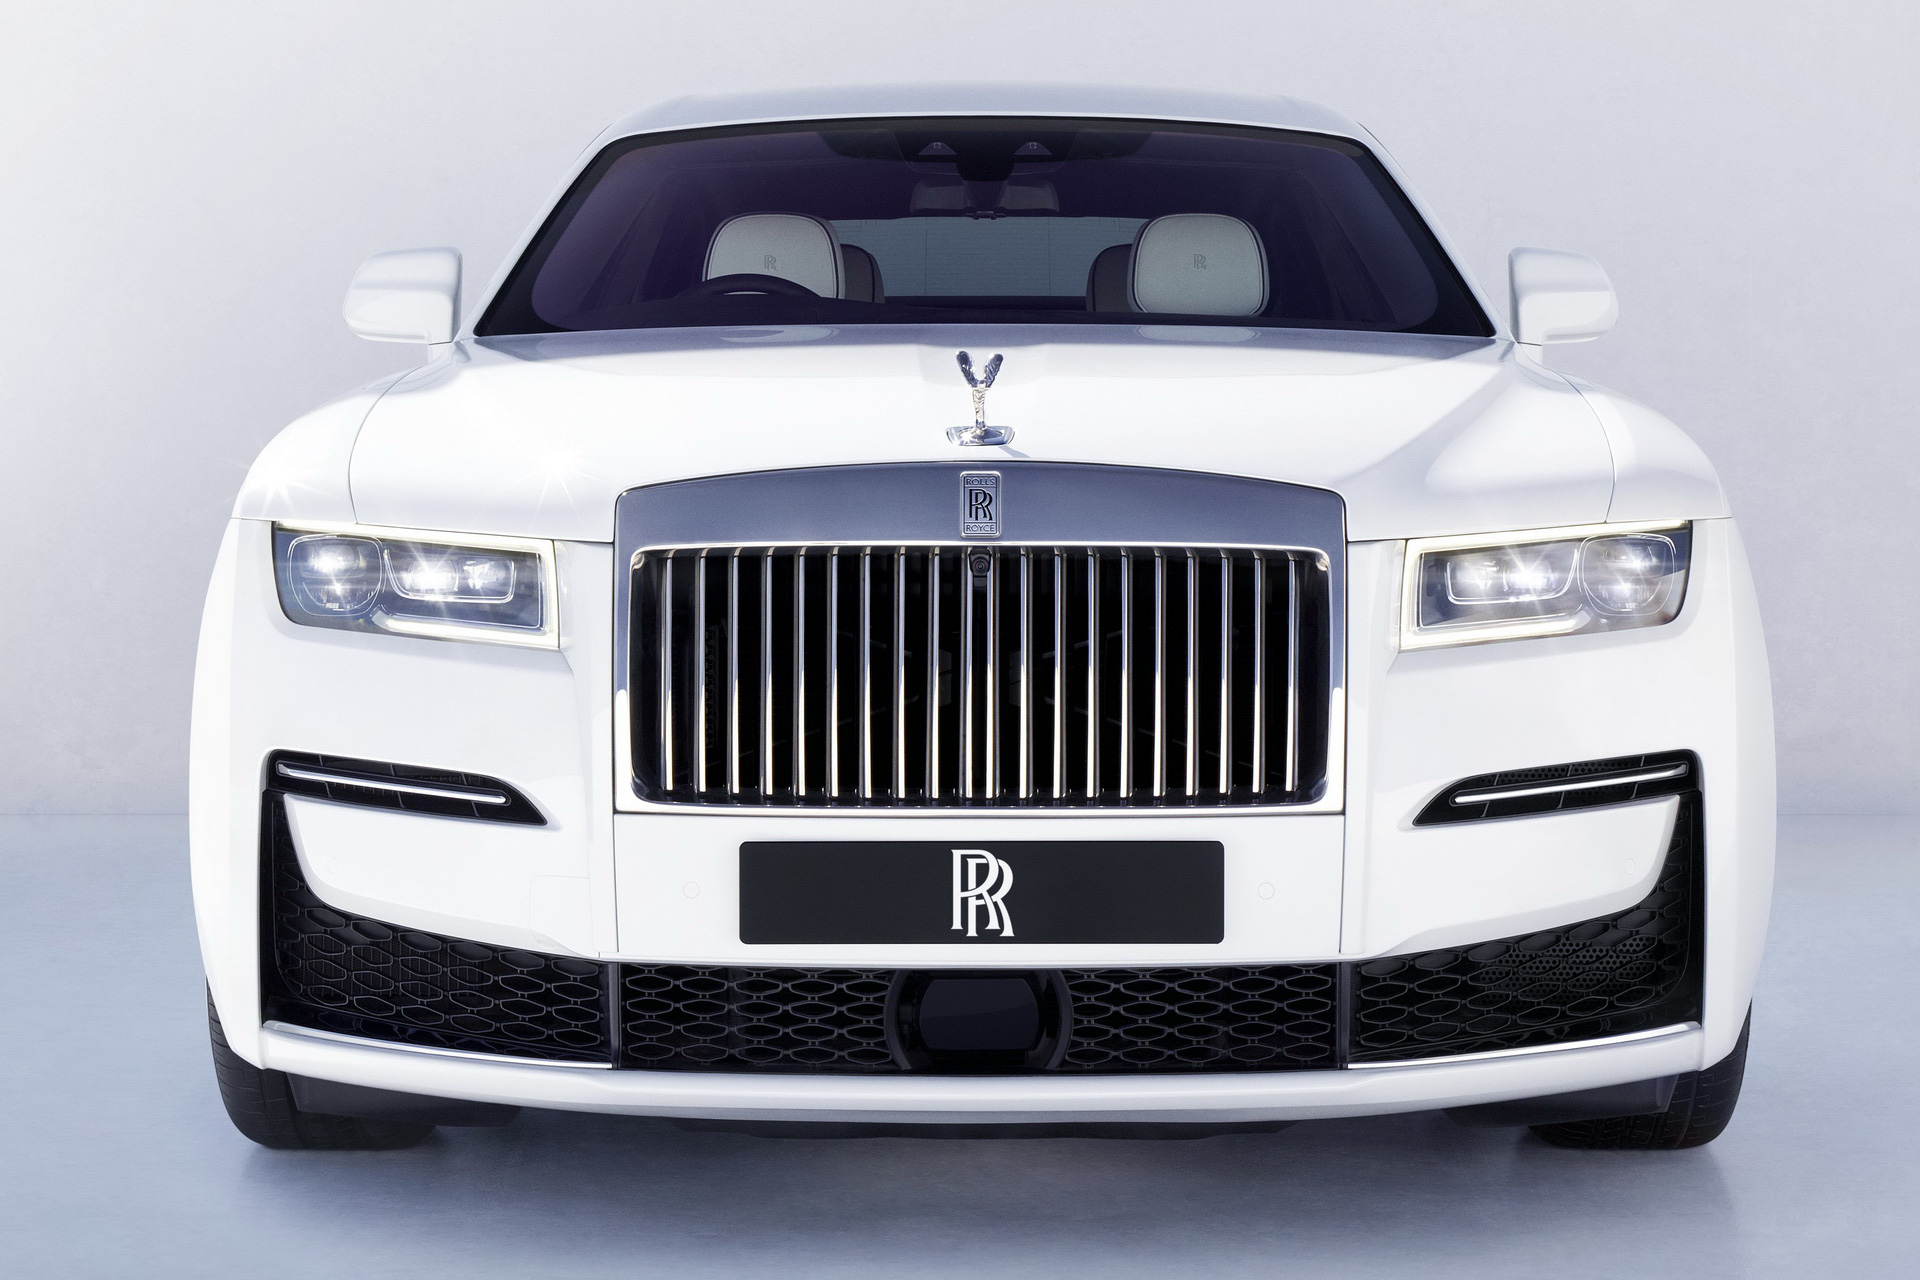 Rolls-Royce Ghost thế hệ mới trình làng: 'Bóng ma' với thiết kế 'mặt cười' ma mị, phá cách hẳn so với Phantom